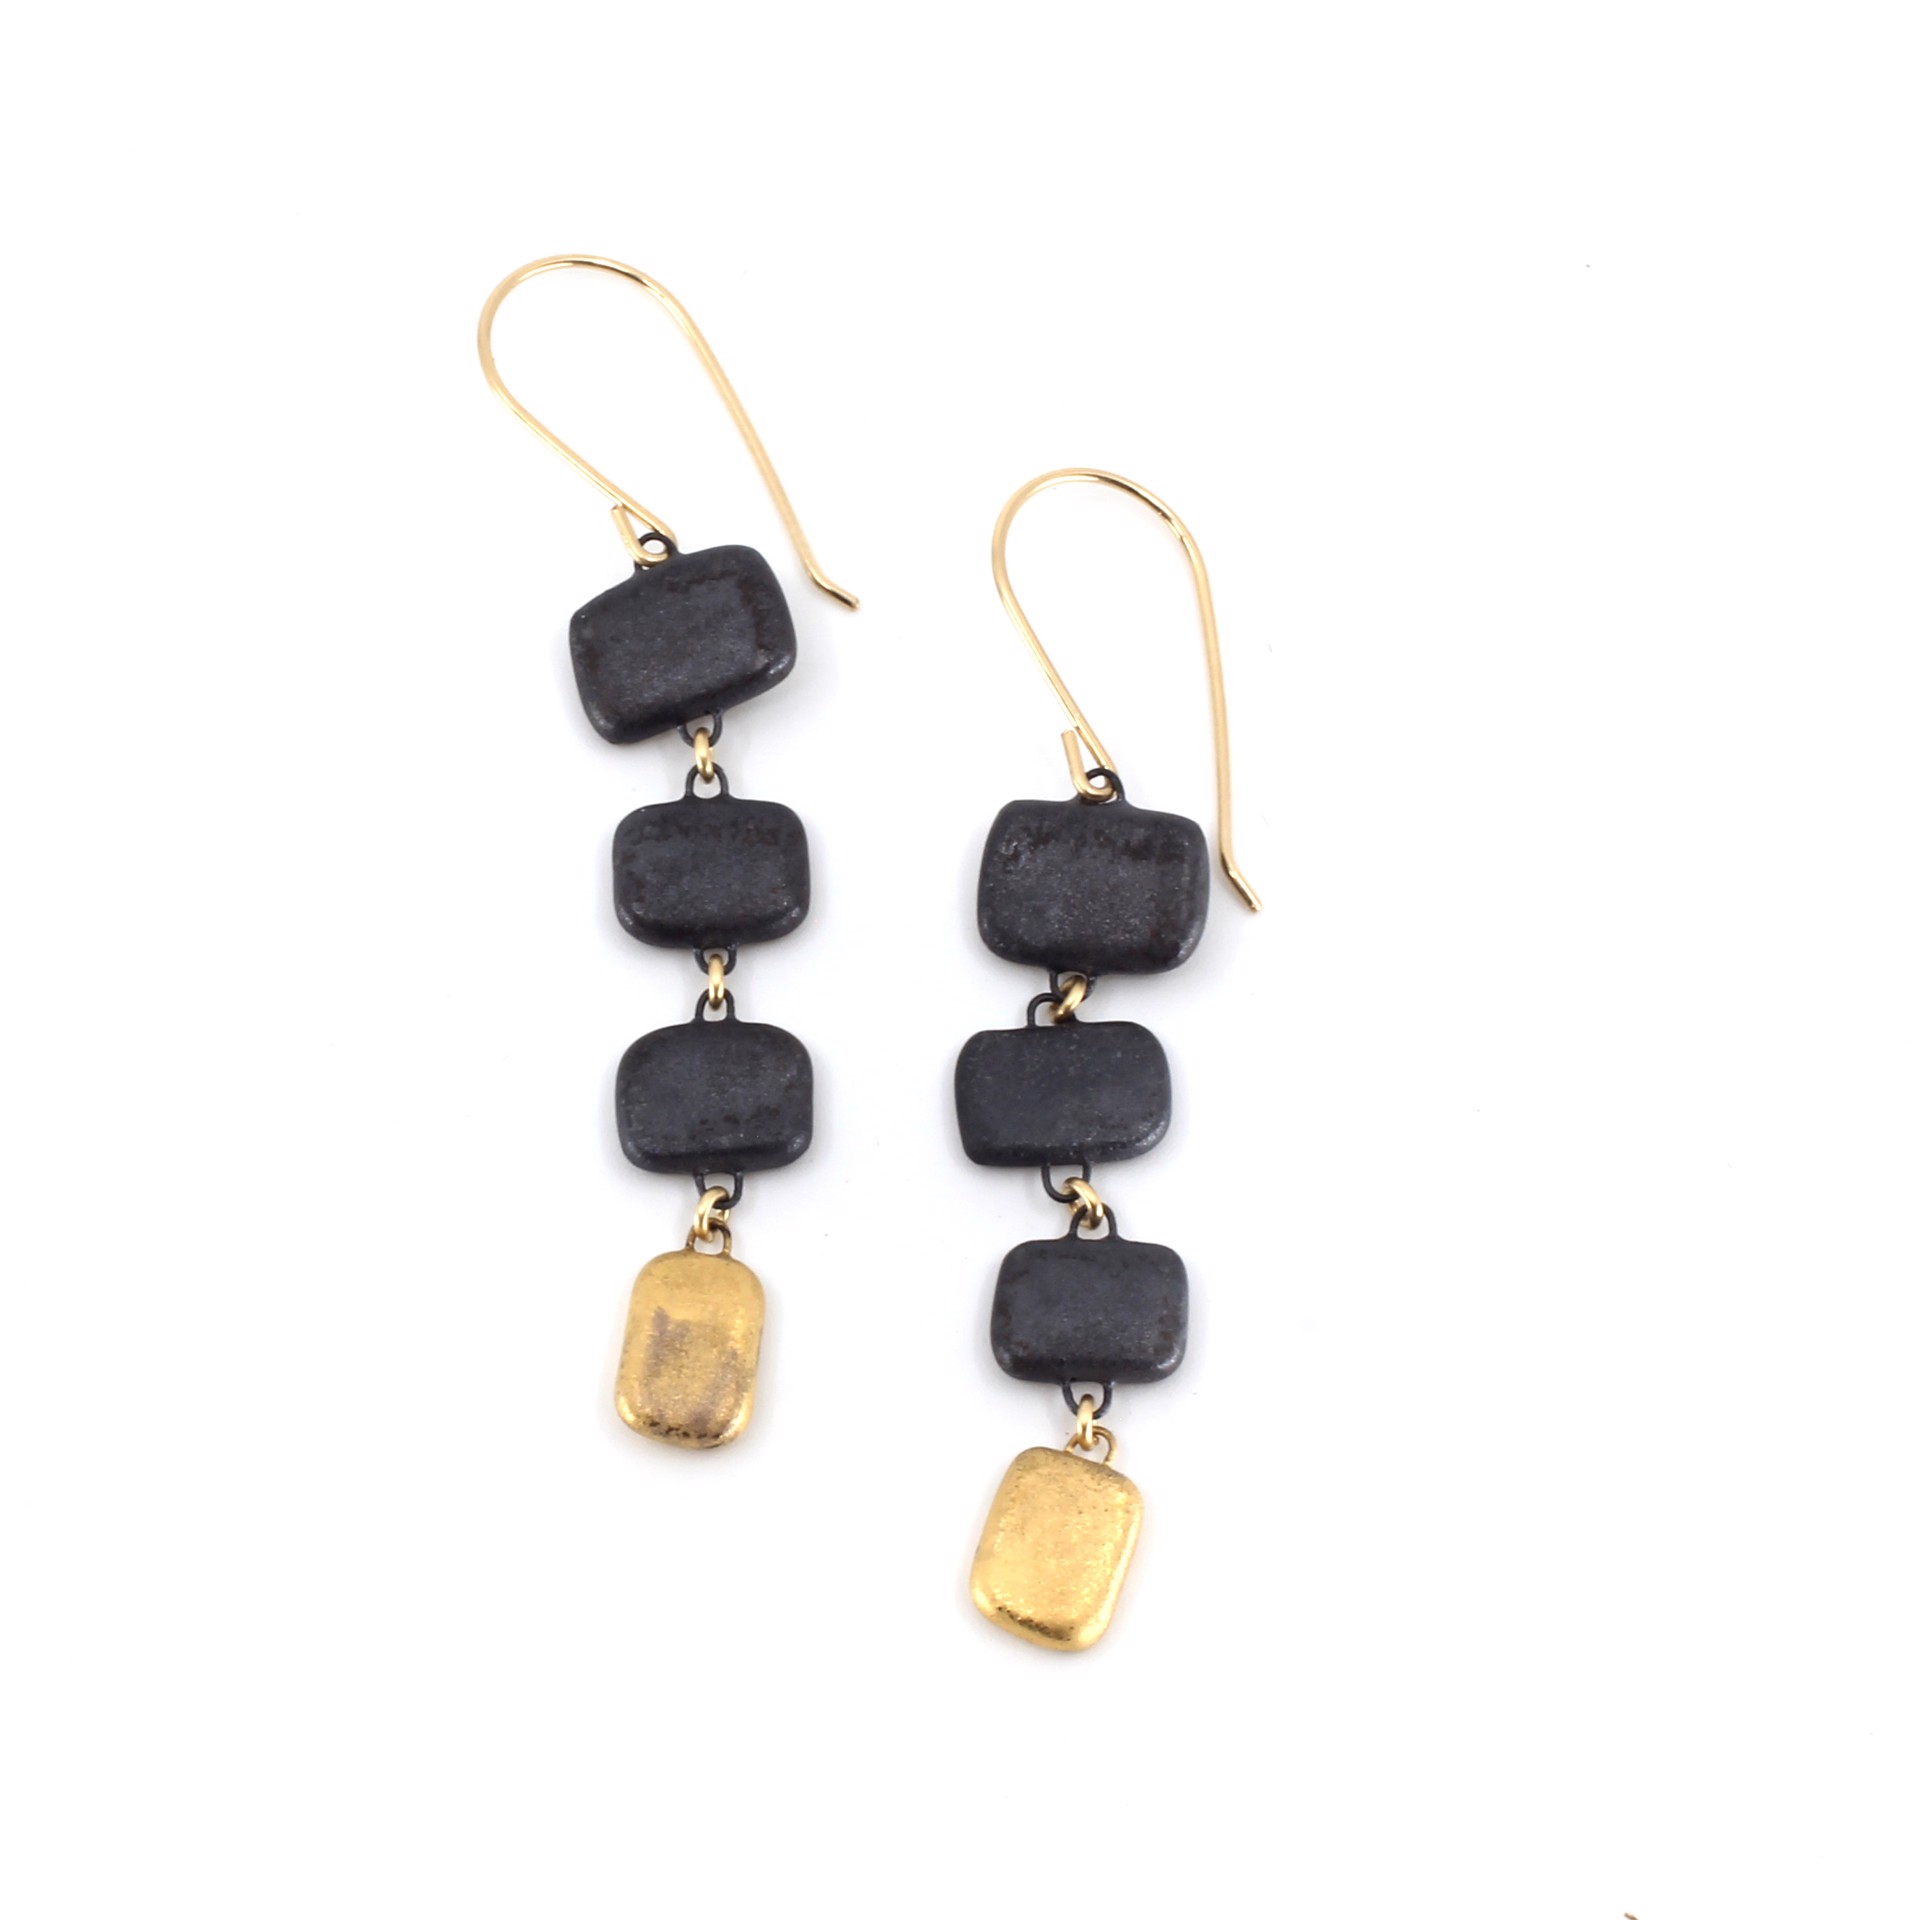 Astraya Earrings (Black) by Jessica Wertz